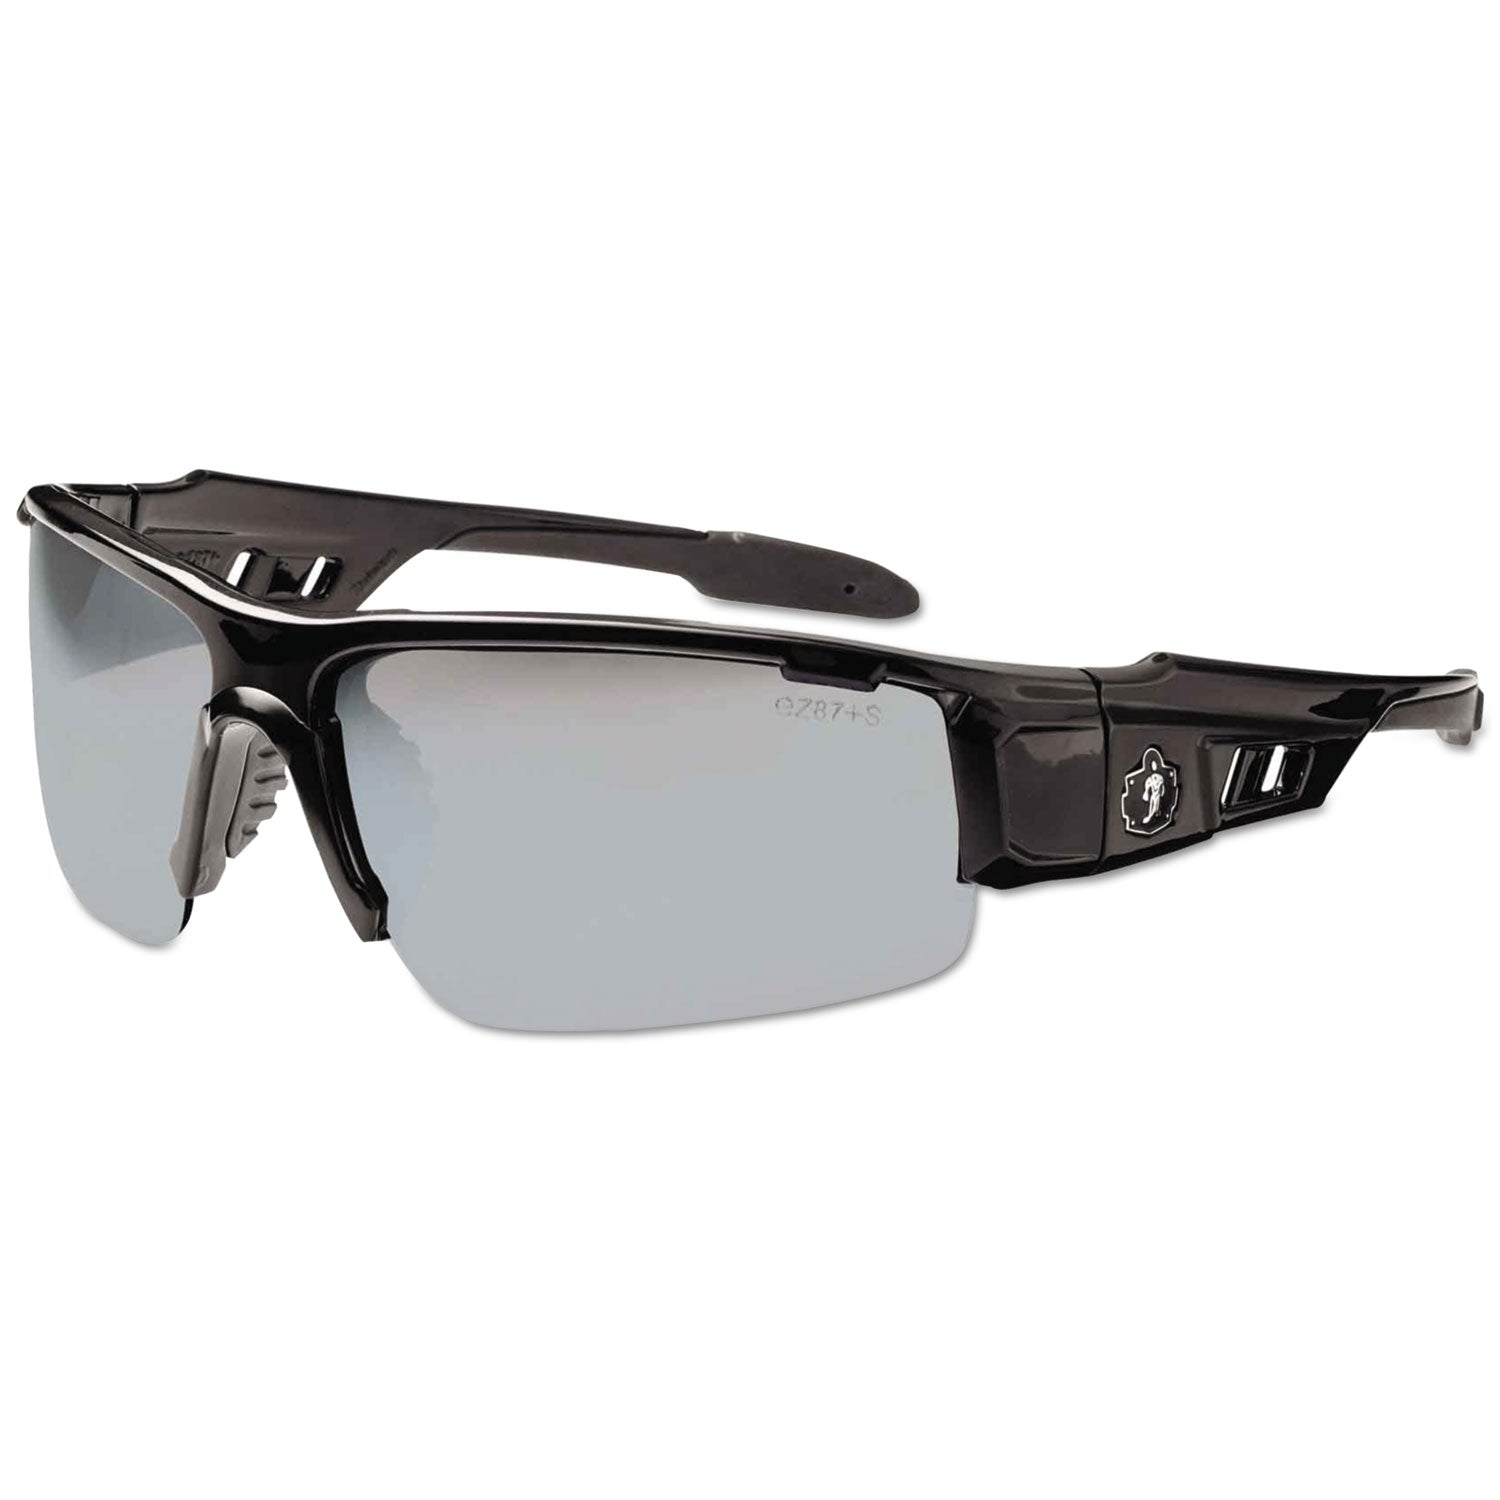 skullerz-dagr-safety-glasses-black-frame-silver-lens-nylon-polycarb-ships-in-1-3-business-days_ego52042 - 1